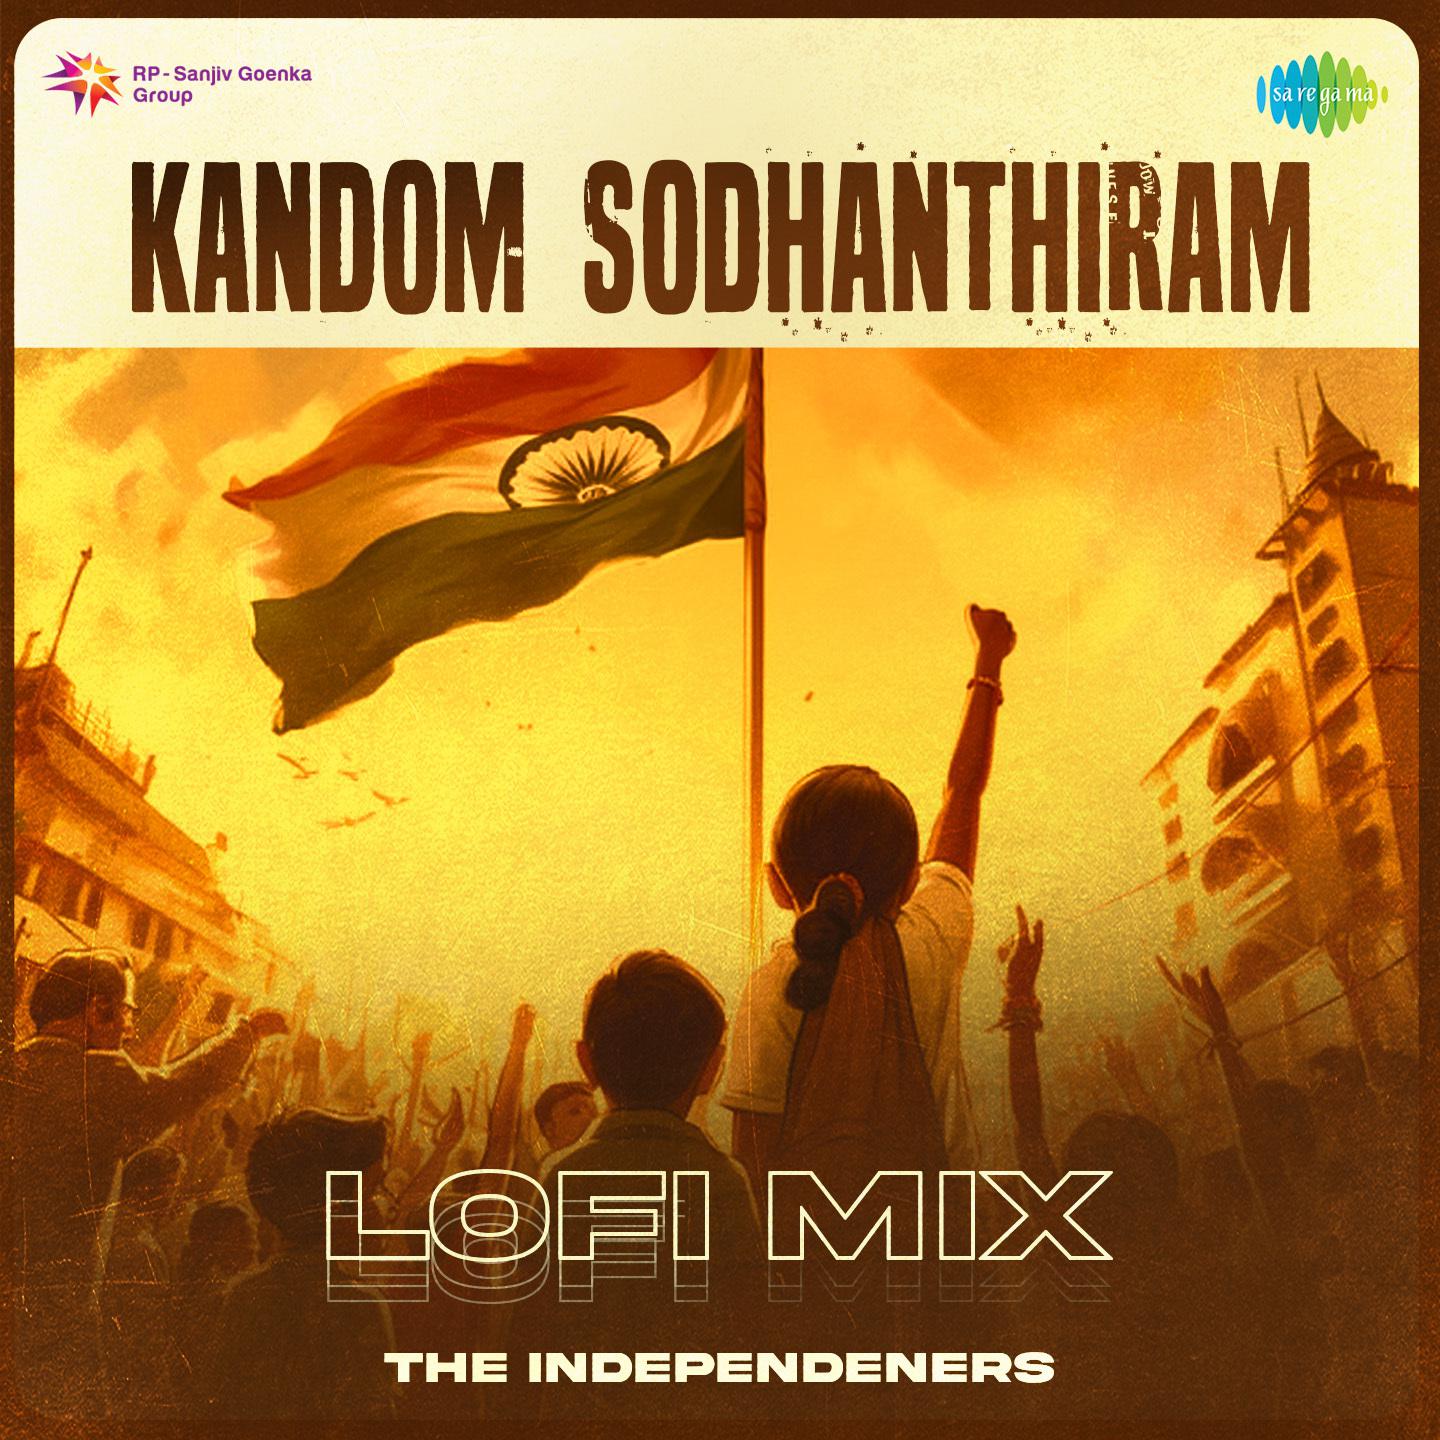 The Independeners - Kandom Sodhanthiram - Lofi Mix